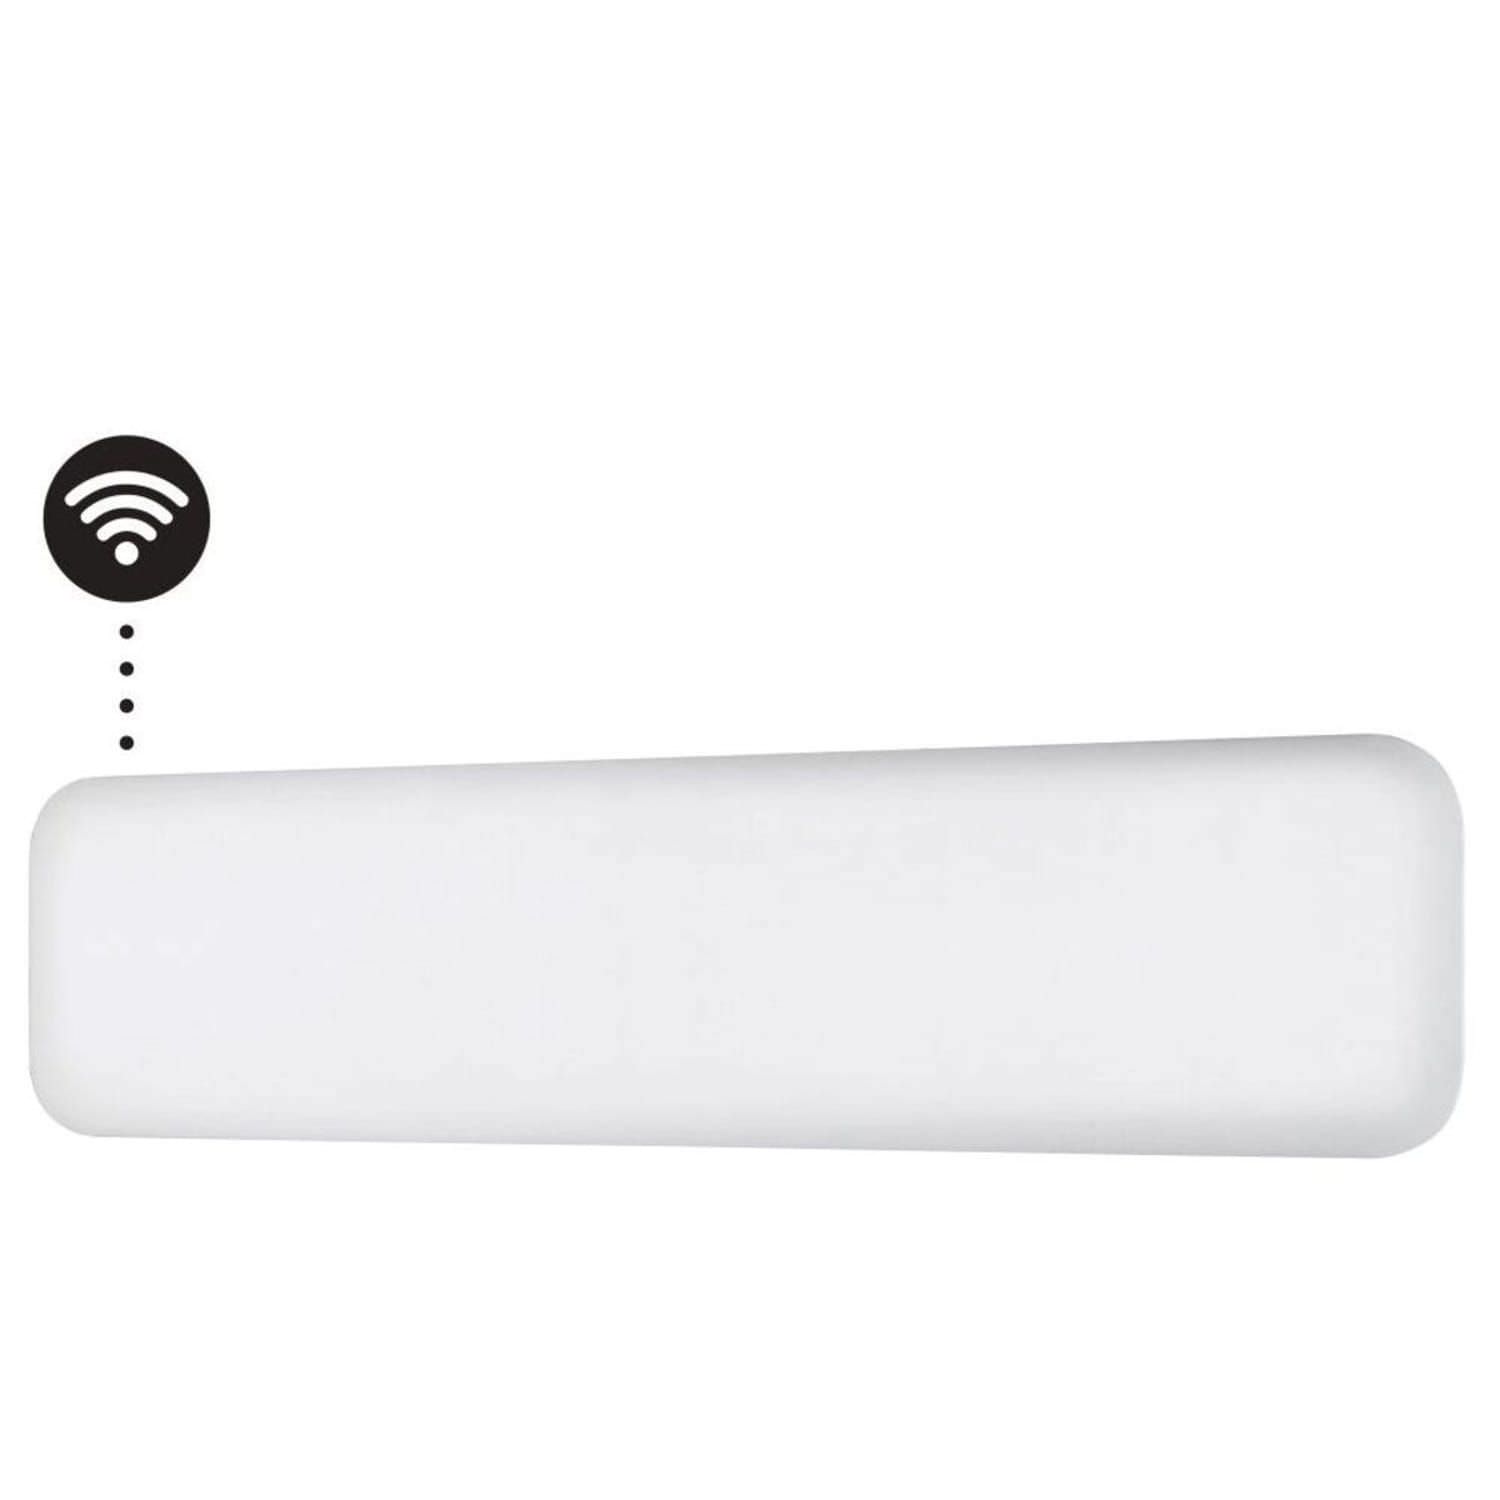 Radiateur mural blanc électrique WiFi, prix bas.